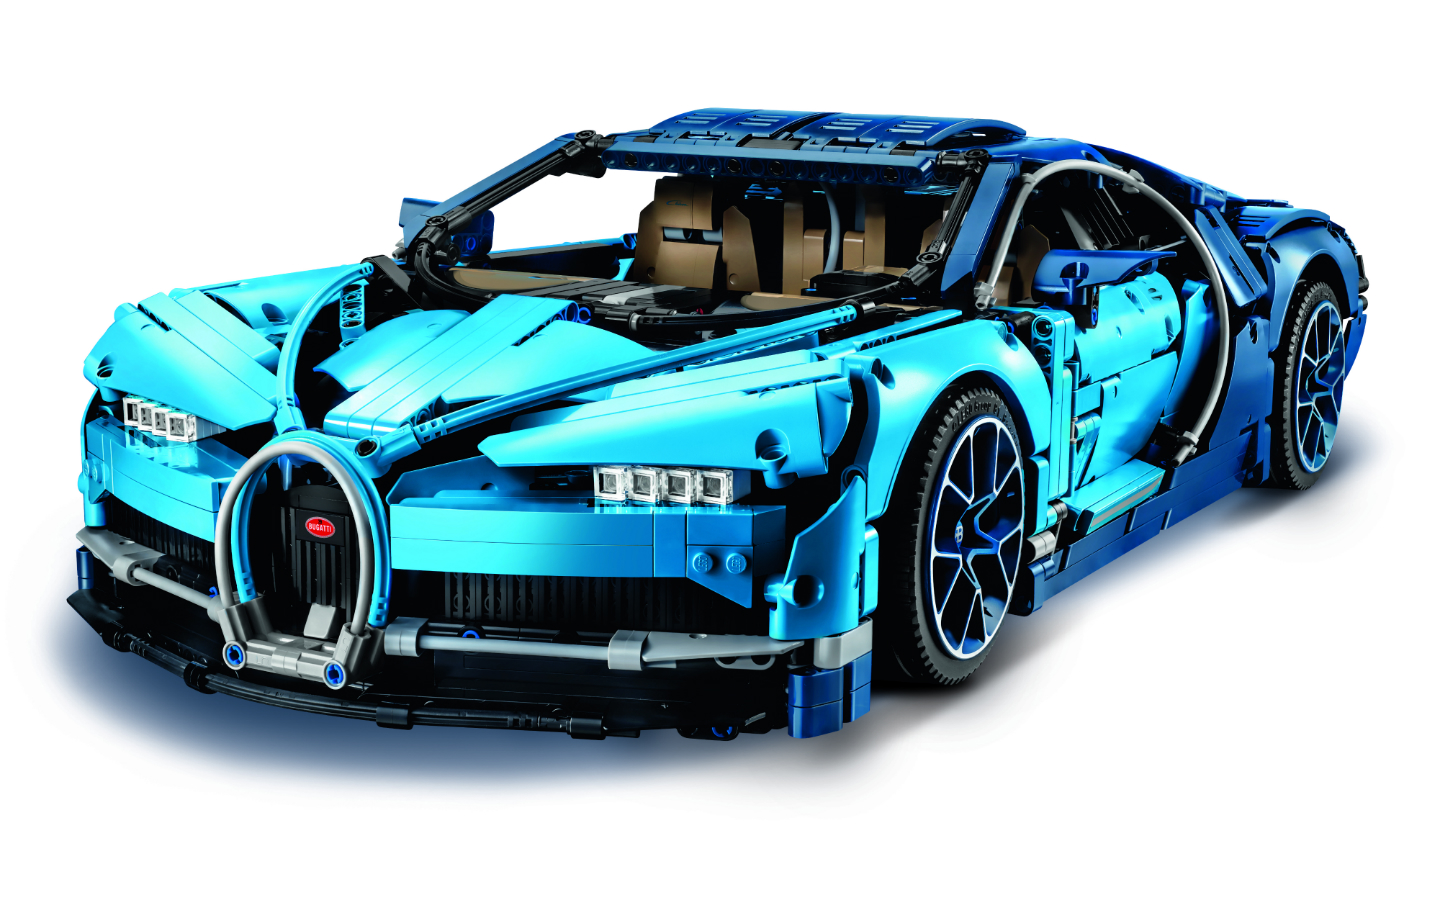 Christmas gift ideas for car fan: Lego Bugatti Chiron